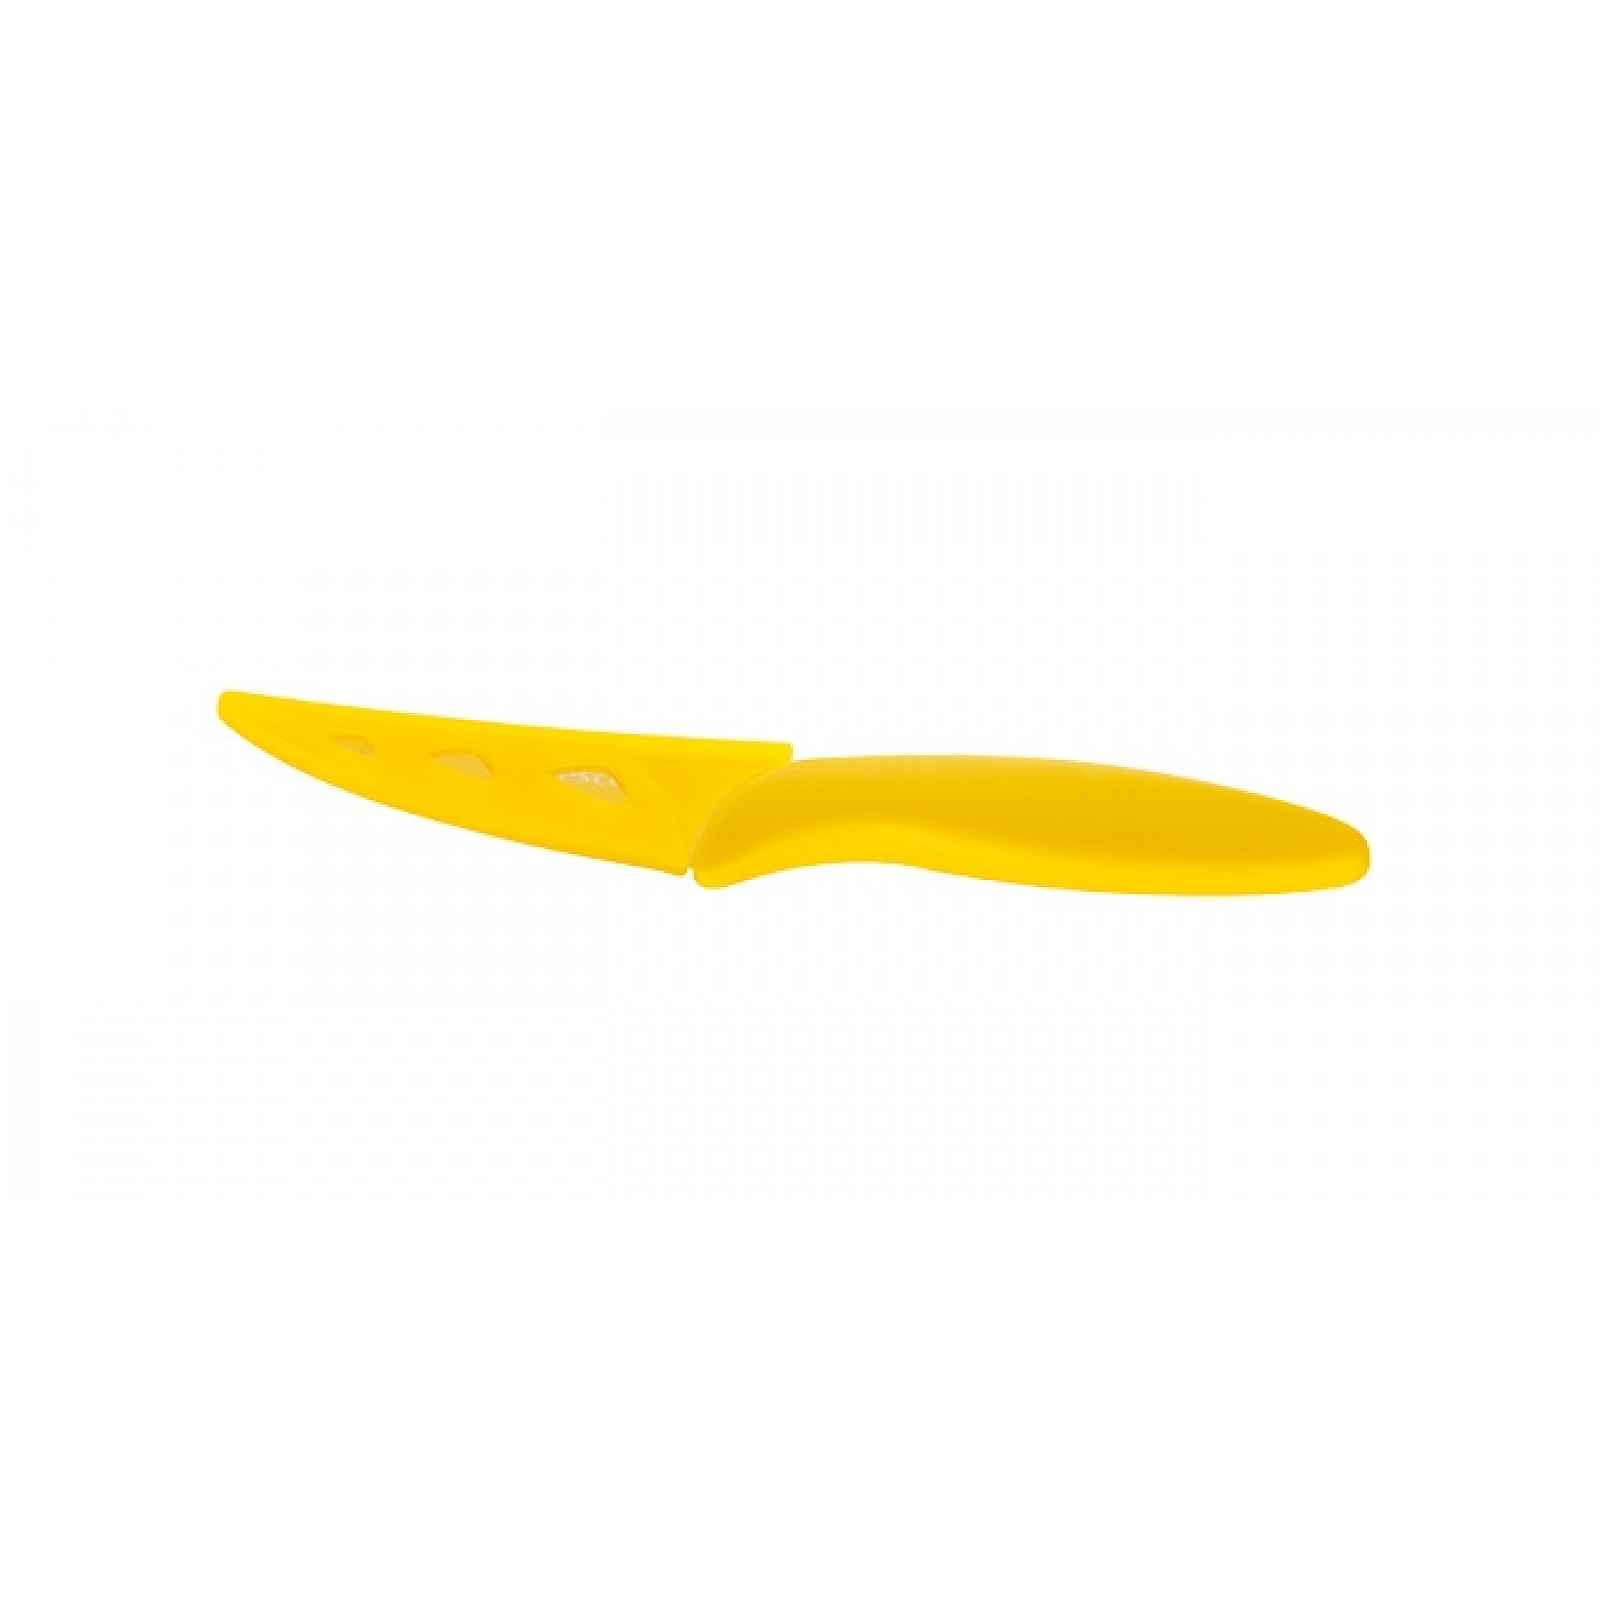 TESCOMA antiadhezní nůž univerzální PRESTO TONE 8 cm